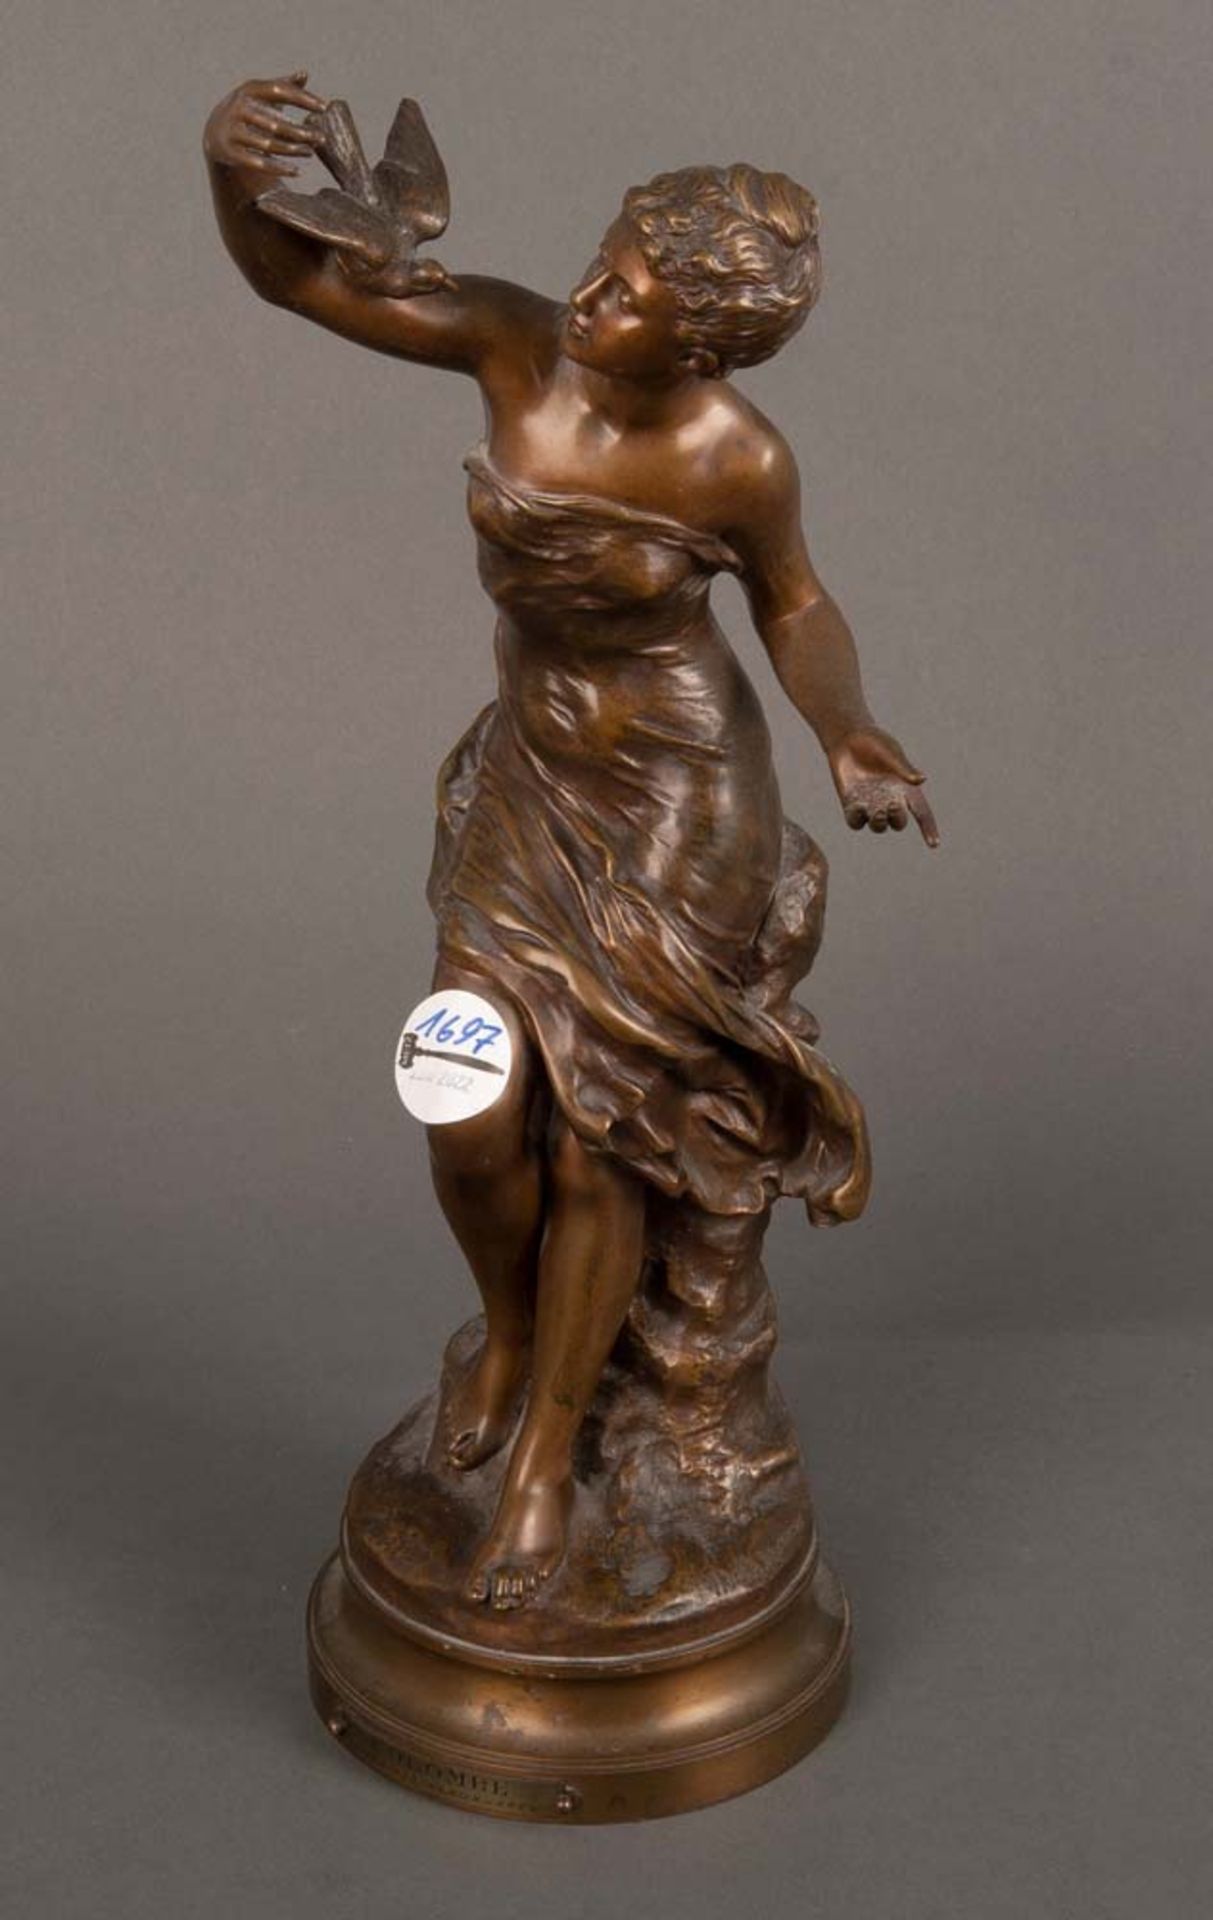 Mathurin Moreau (1822-1912). Stehende Dame. Bronze, angebrachtes Schild „COLOMBE SALON DES BEAUX-